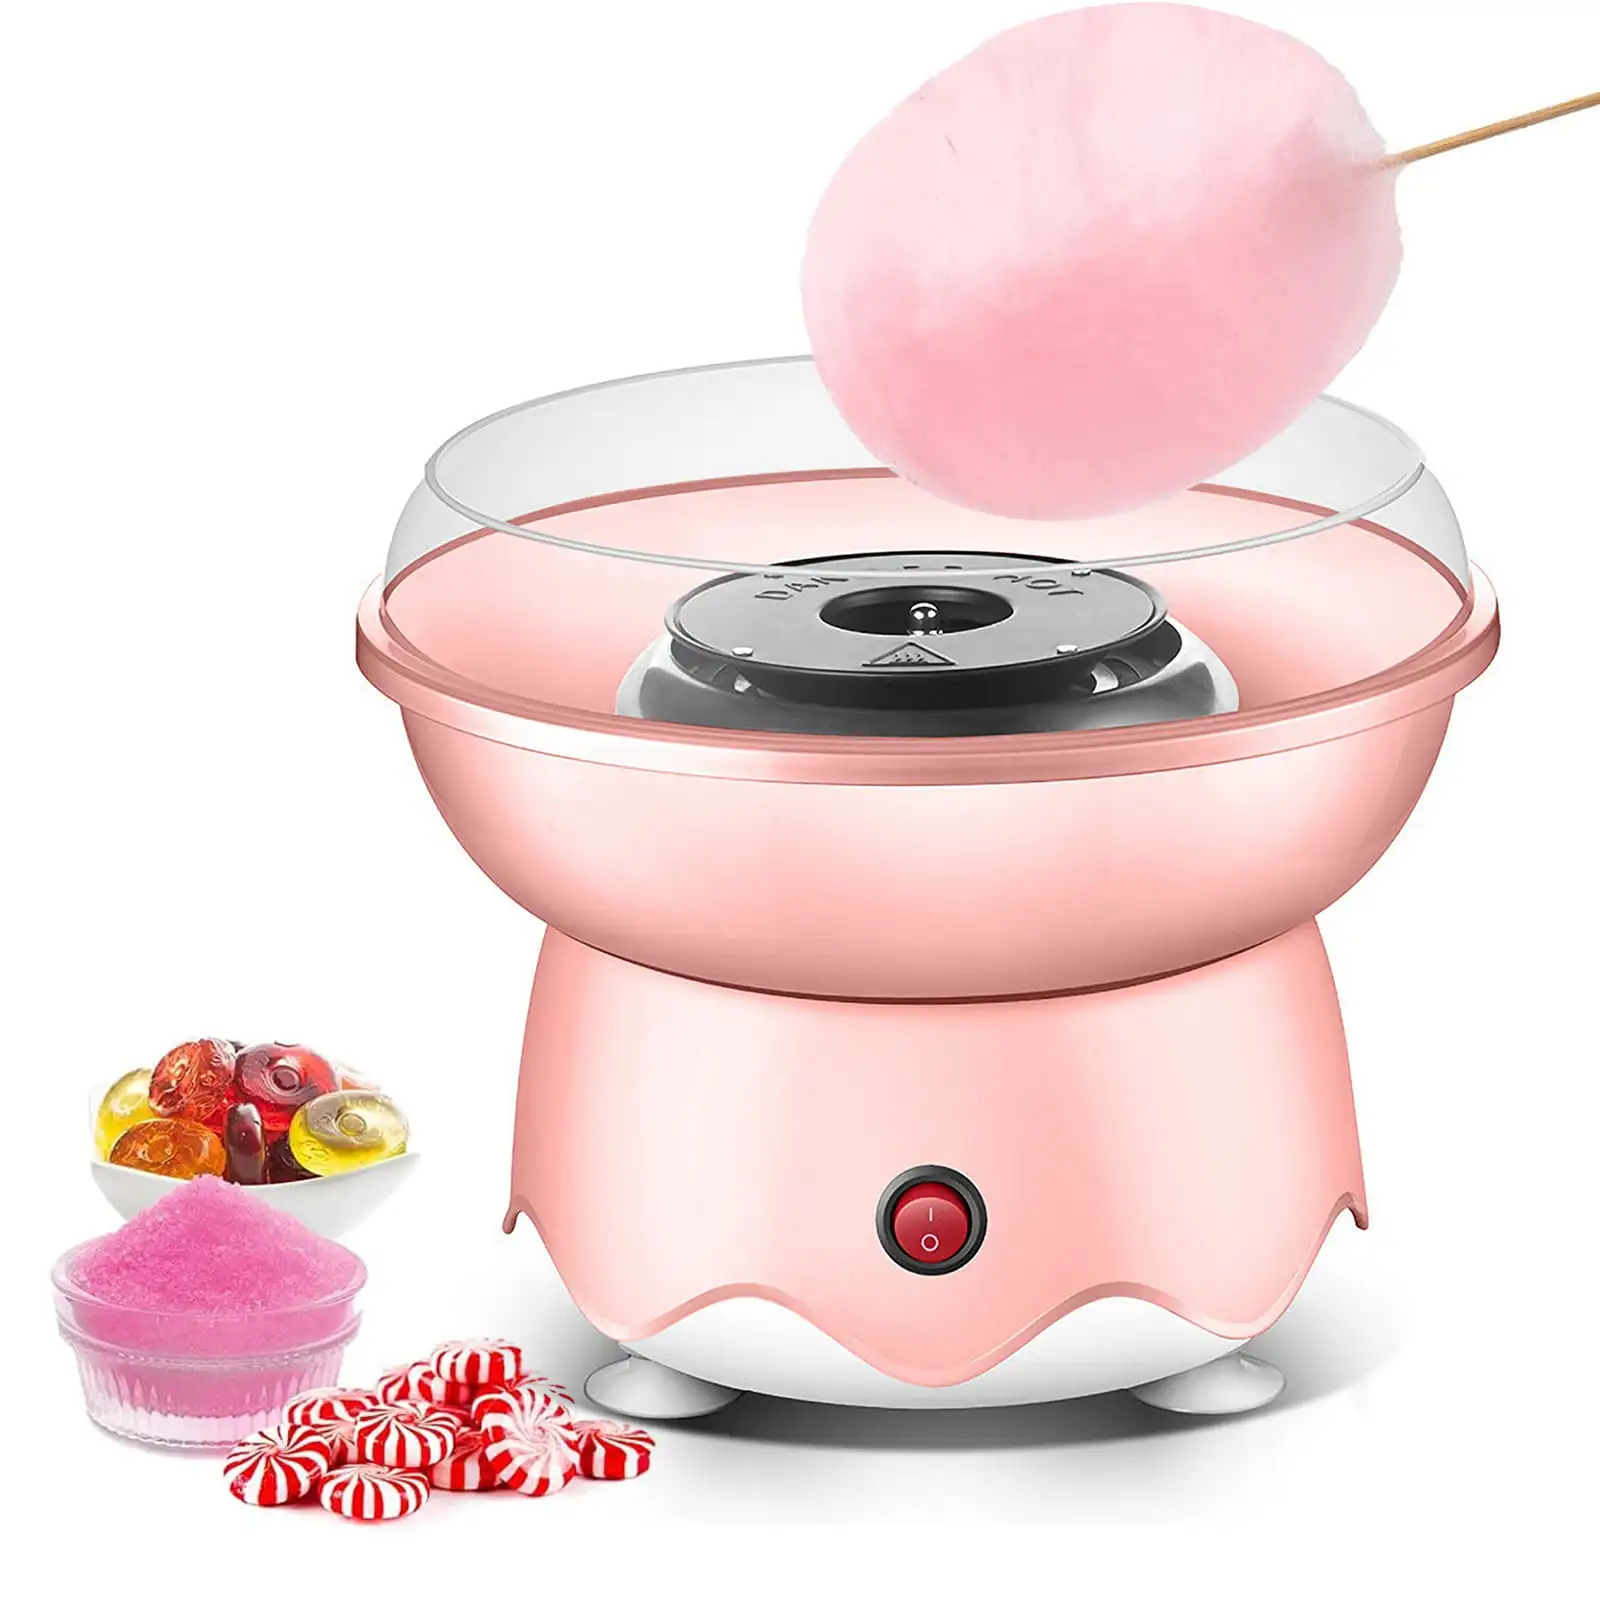 

Аппарат для изготовления сладостей из хлопка, 400 Вт, розовый цвет